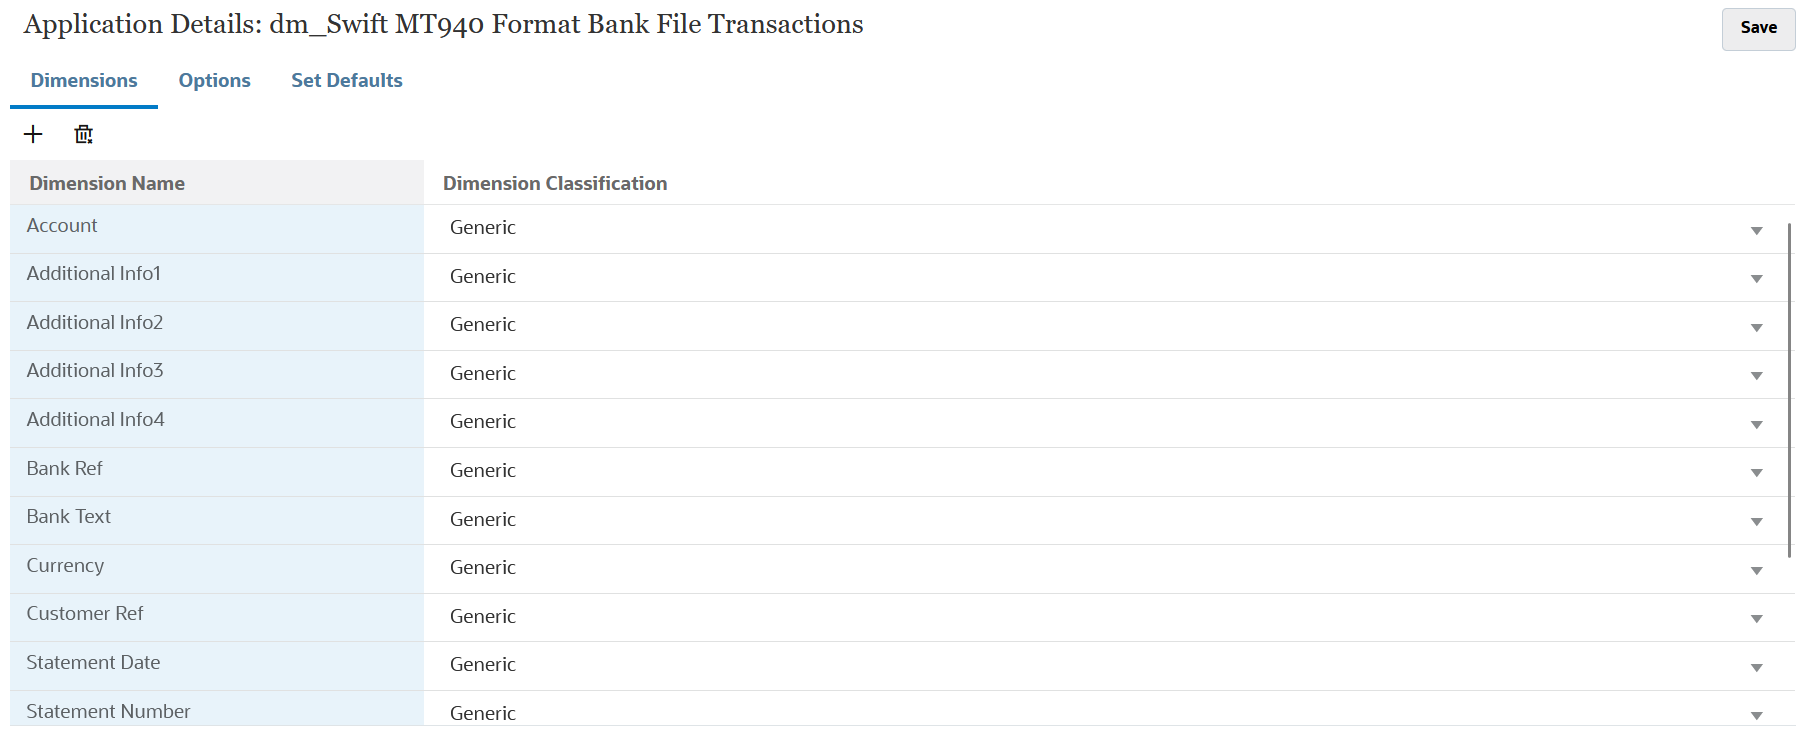 En la imagen se muestran transacciones de archivo bancario SWIFT MT940.